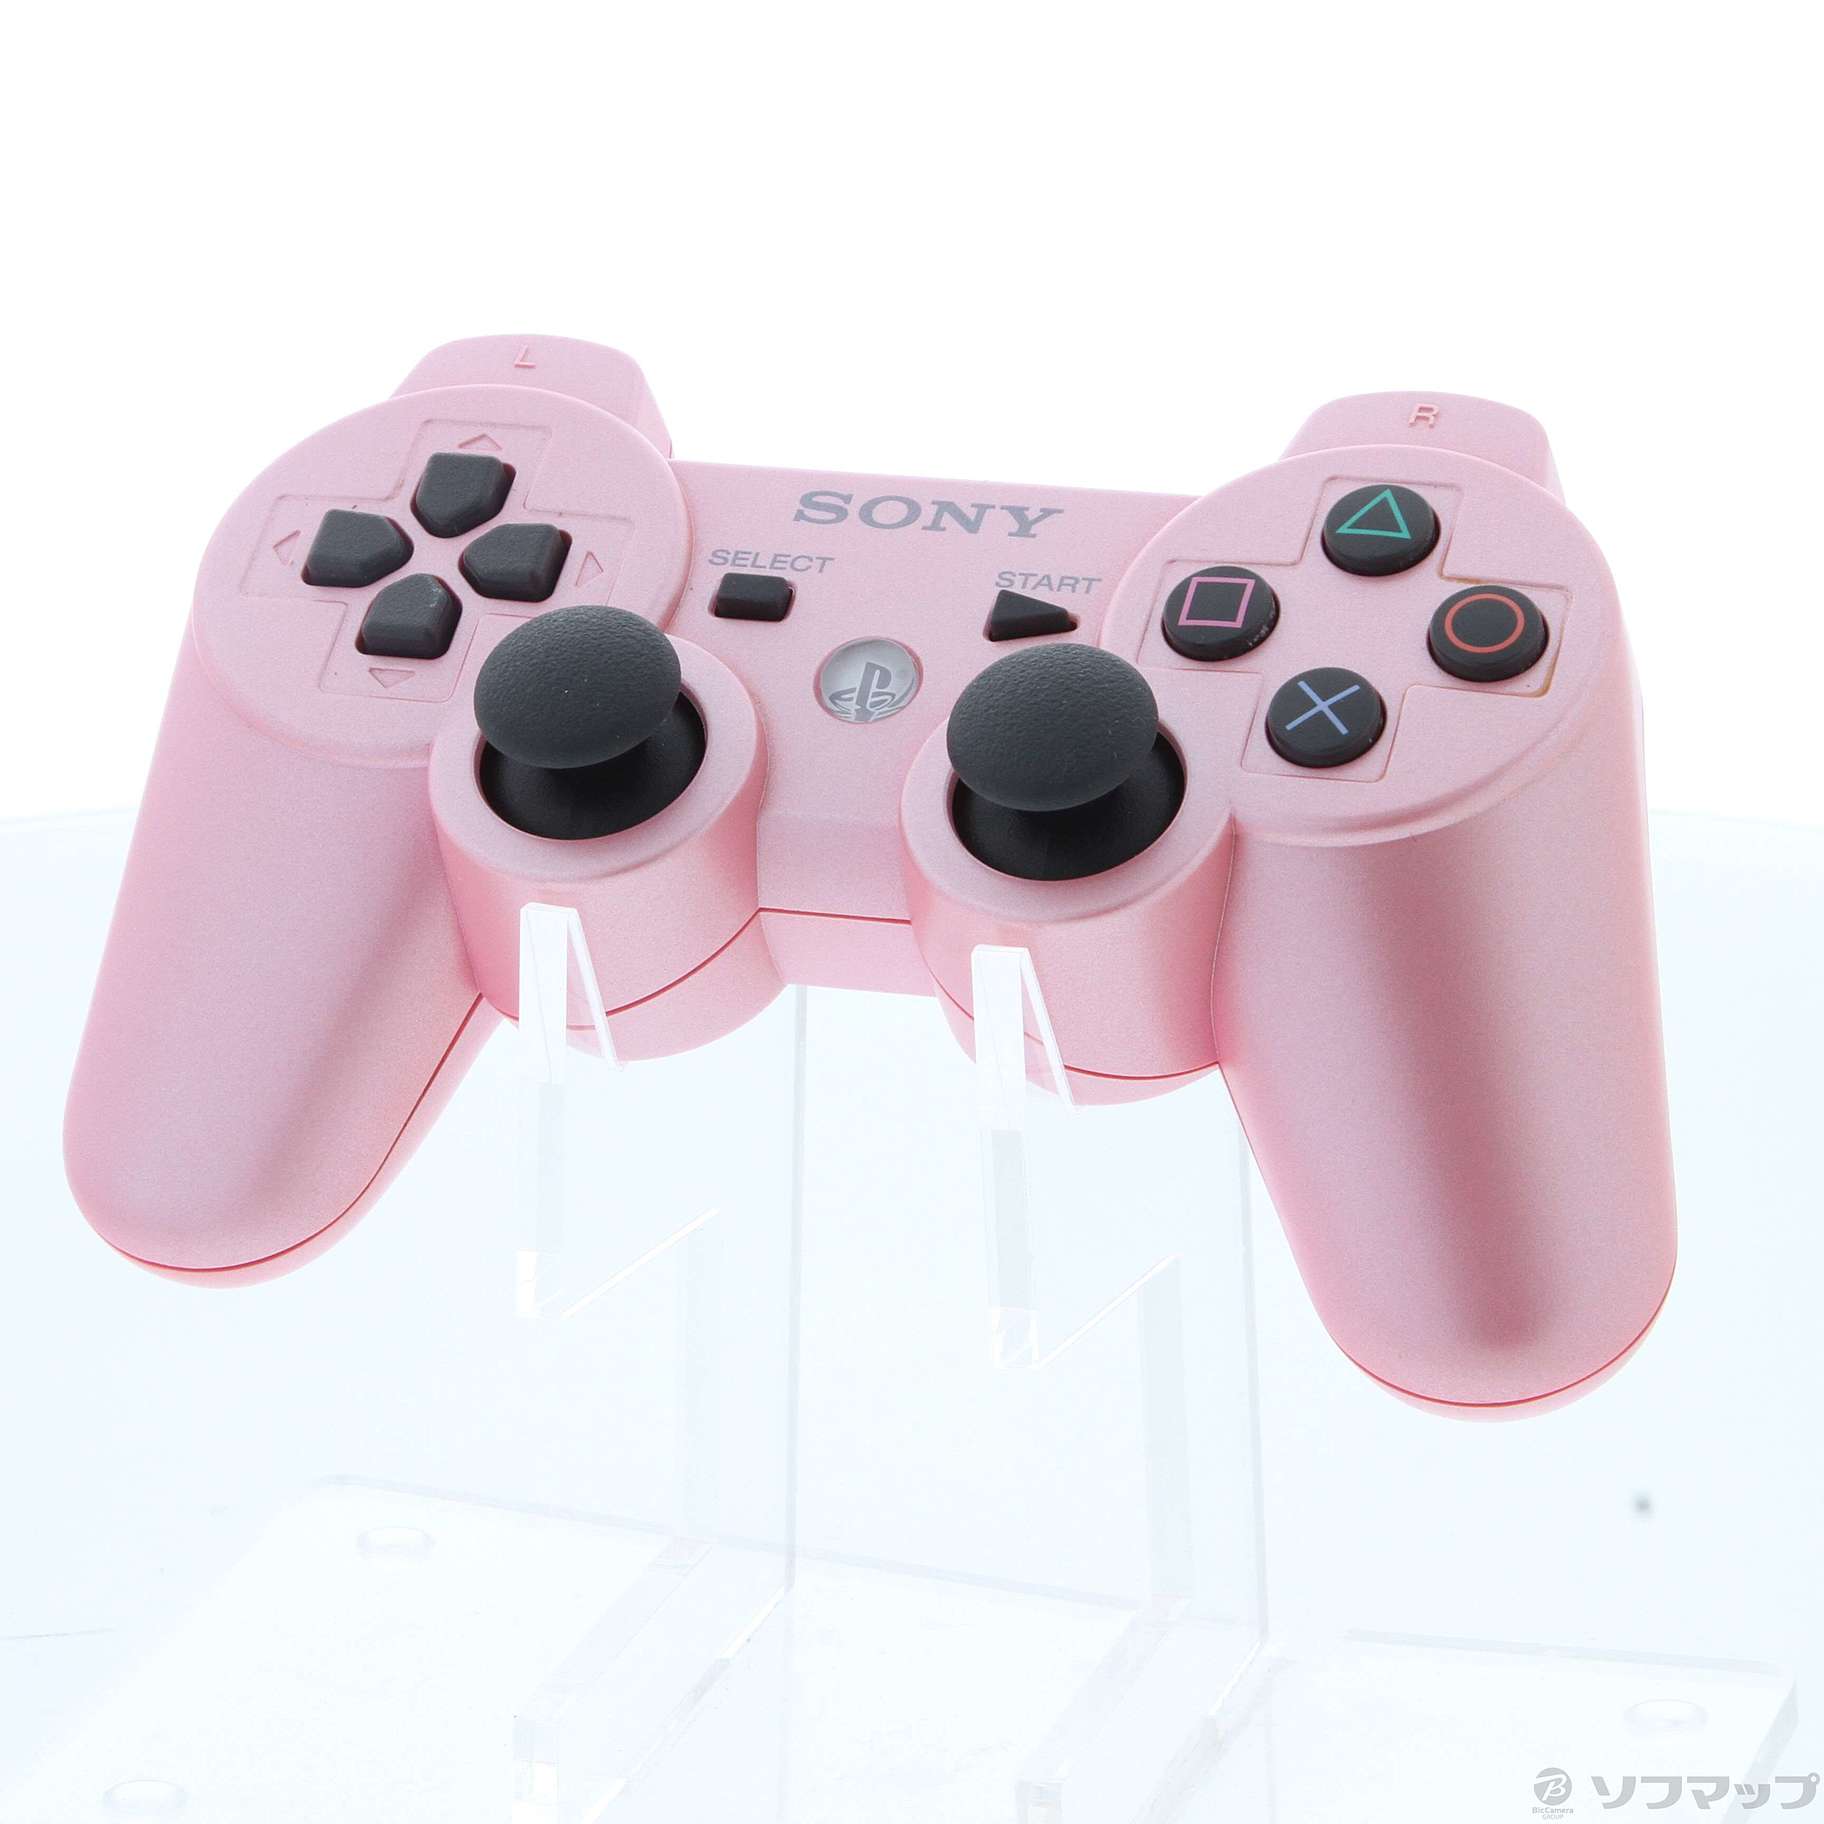 お得安いDUALSHOCK3 キャンディー・ピンク コントローラー セット 動作確認済み 送料無料 匿名配送 デュアルショック3 PS3 PlayStation3 アクセサリ、周辺機器